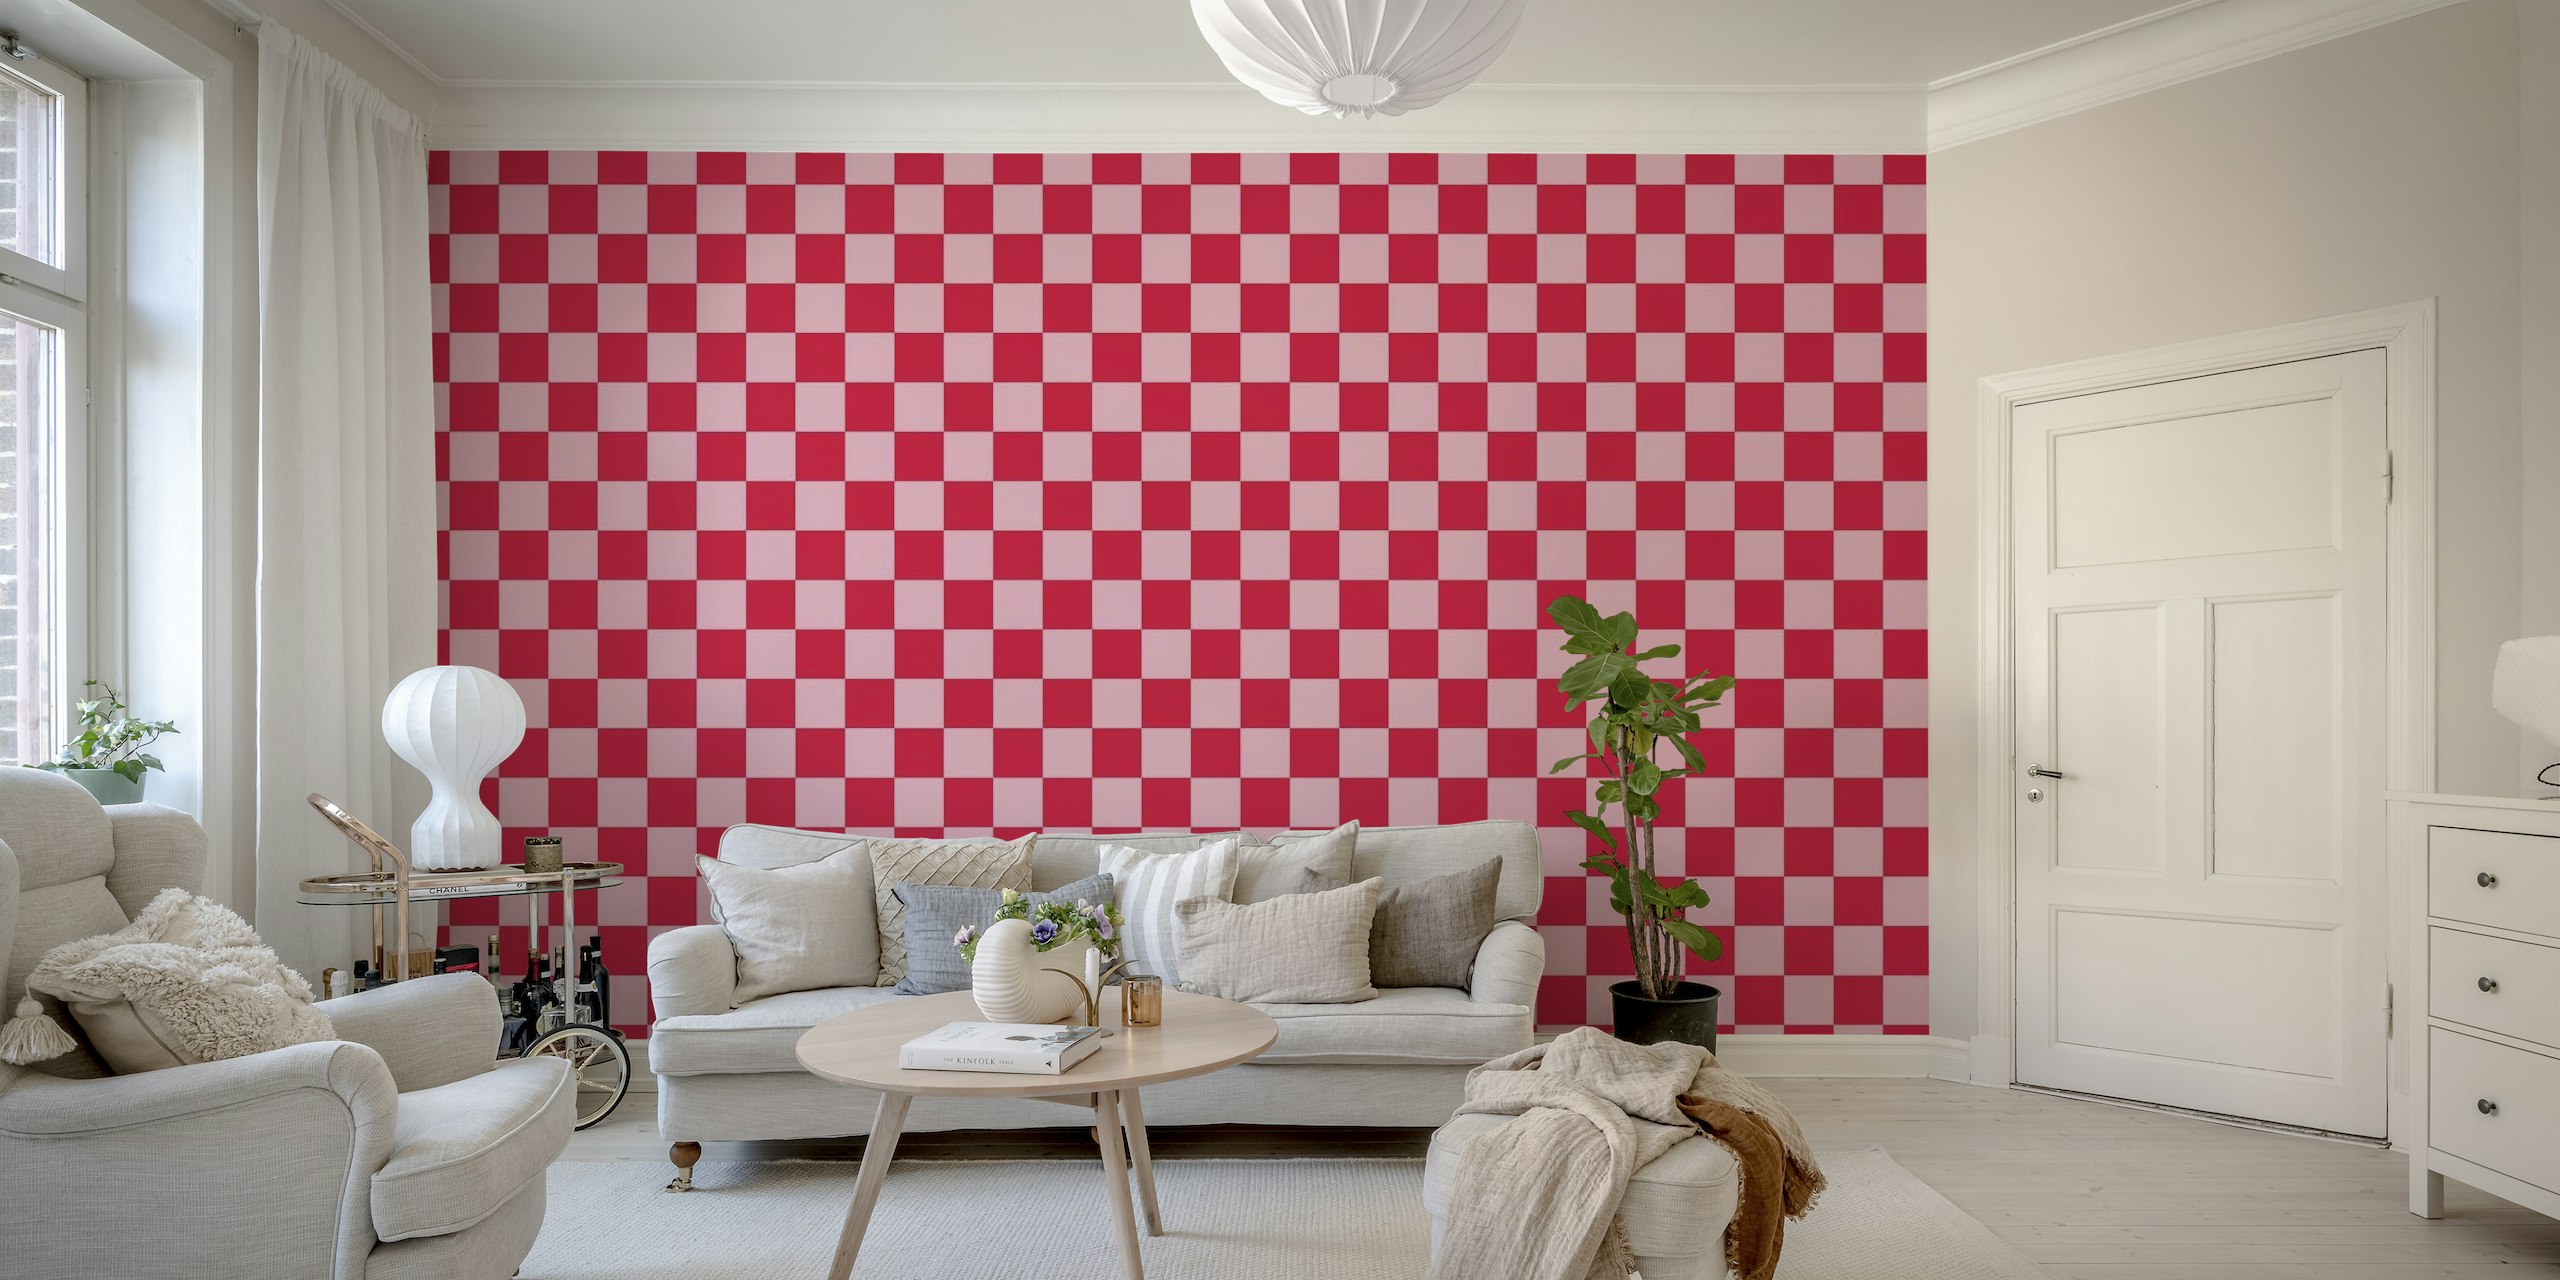 Fotomural vinílico de parede grande com padrão xadrez rosa e carmesim